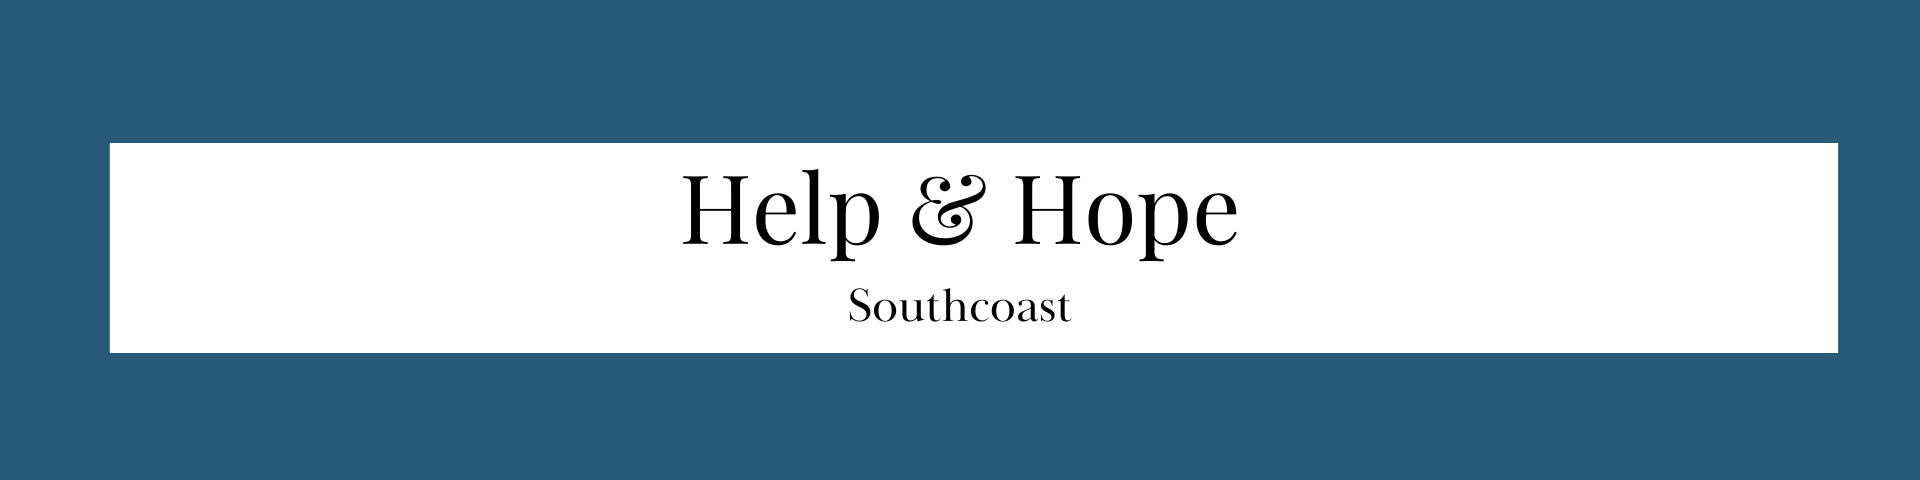 Help & Hope Southcoast (Link)